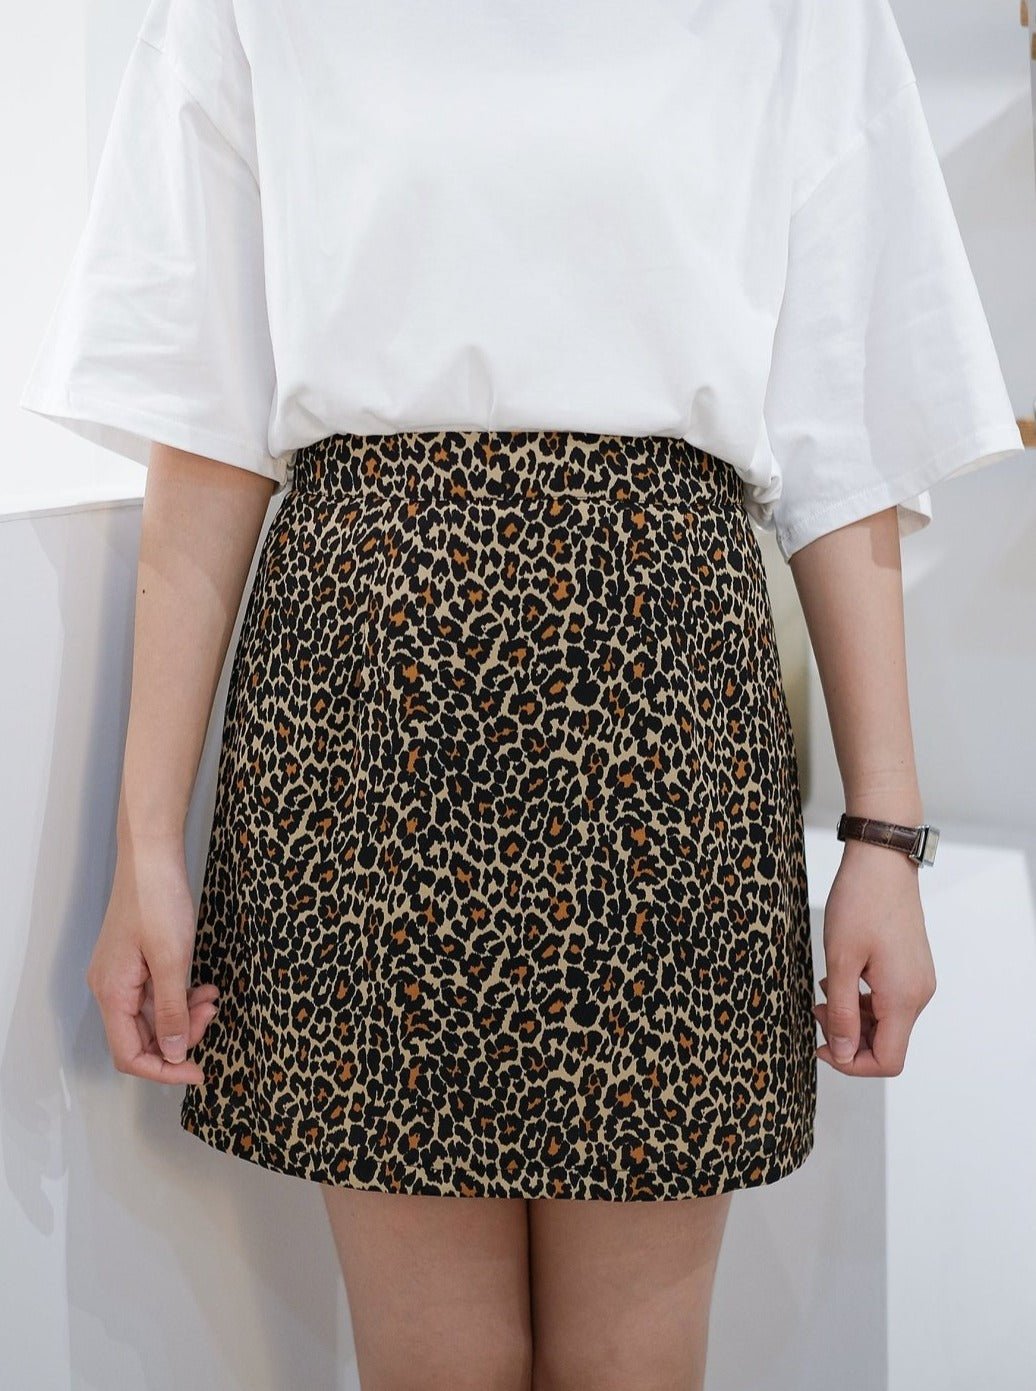 Printed Mini Skirt - DAG-DD7853-21LeopardprintS - Leopard Print - S - D'ZAGE Designs